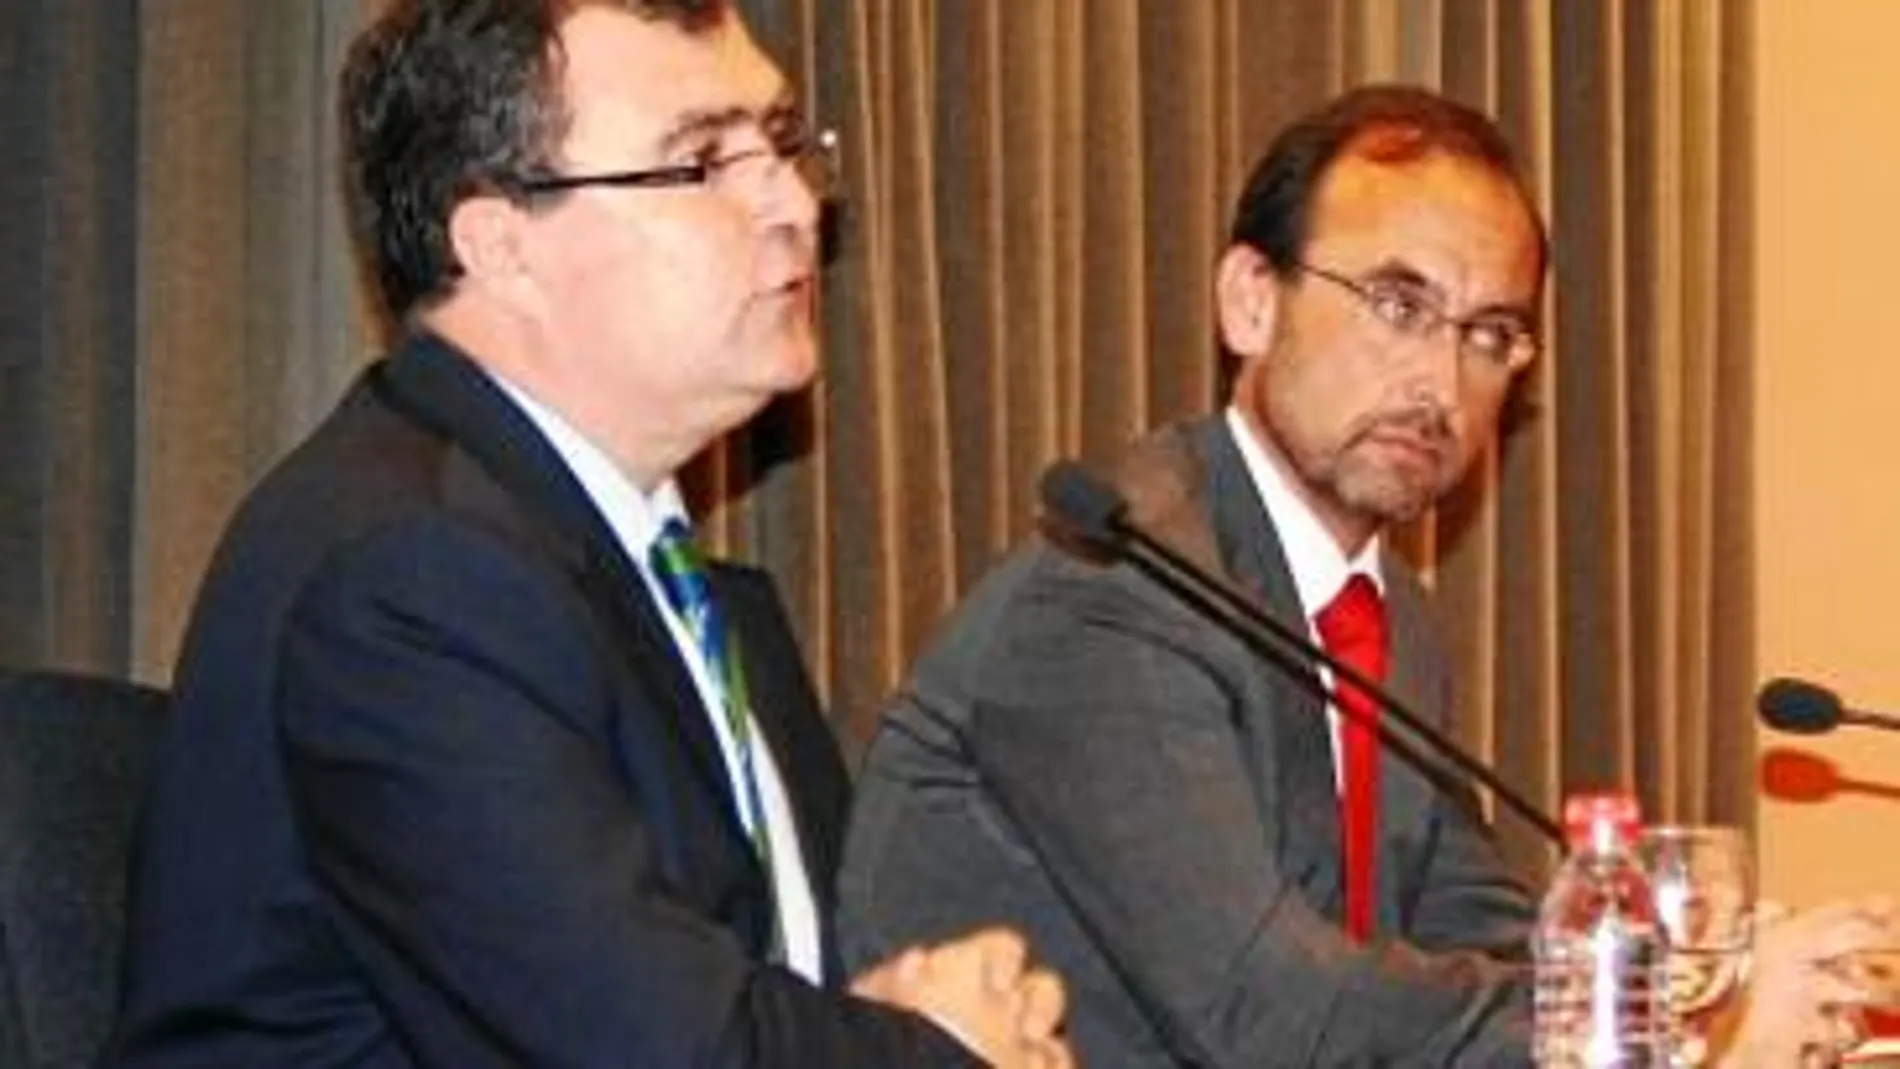 Los consejeros José Ballesta y Salvador Marín, durante la presentación del plan «Estrategia de transporte y logística de la Región de Murcia»